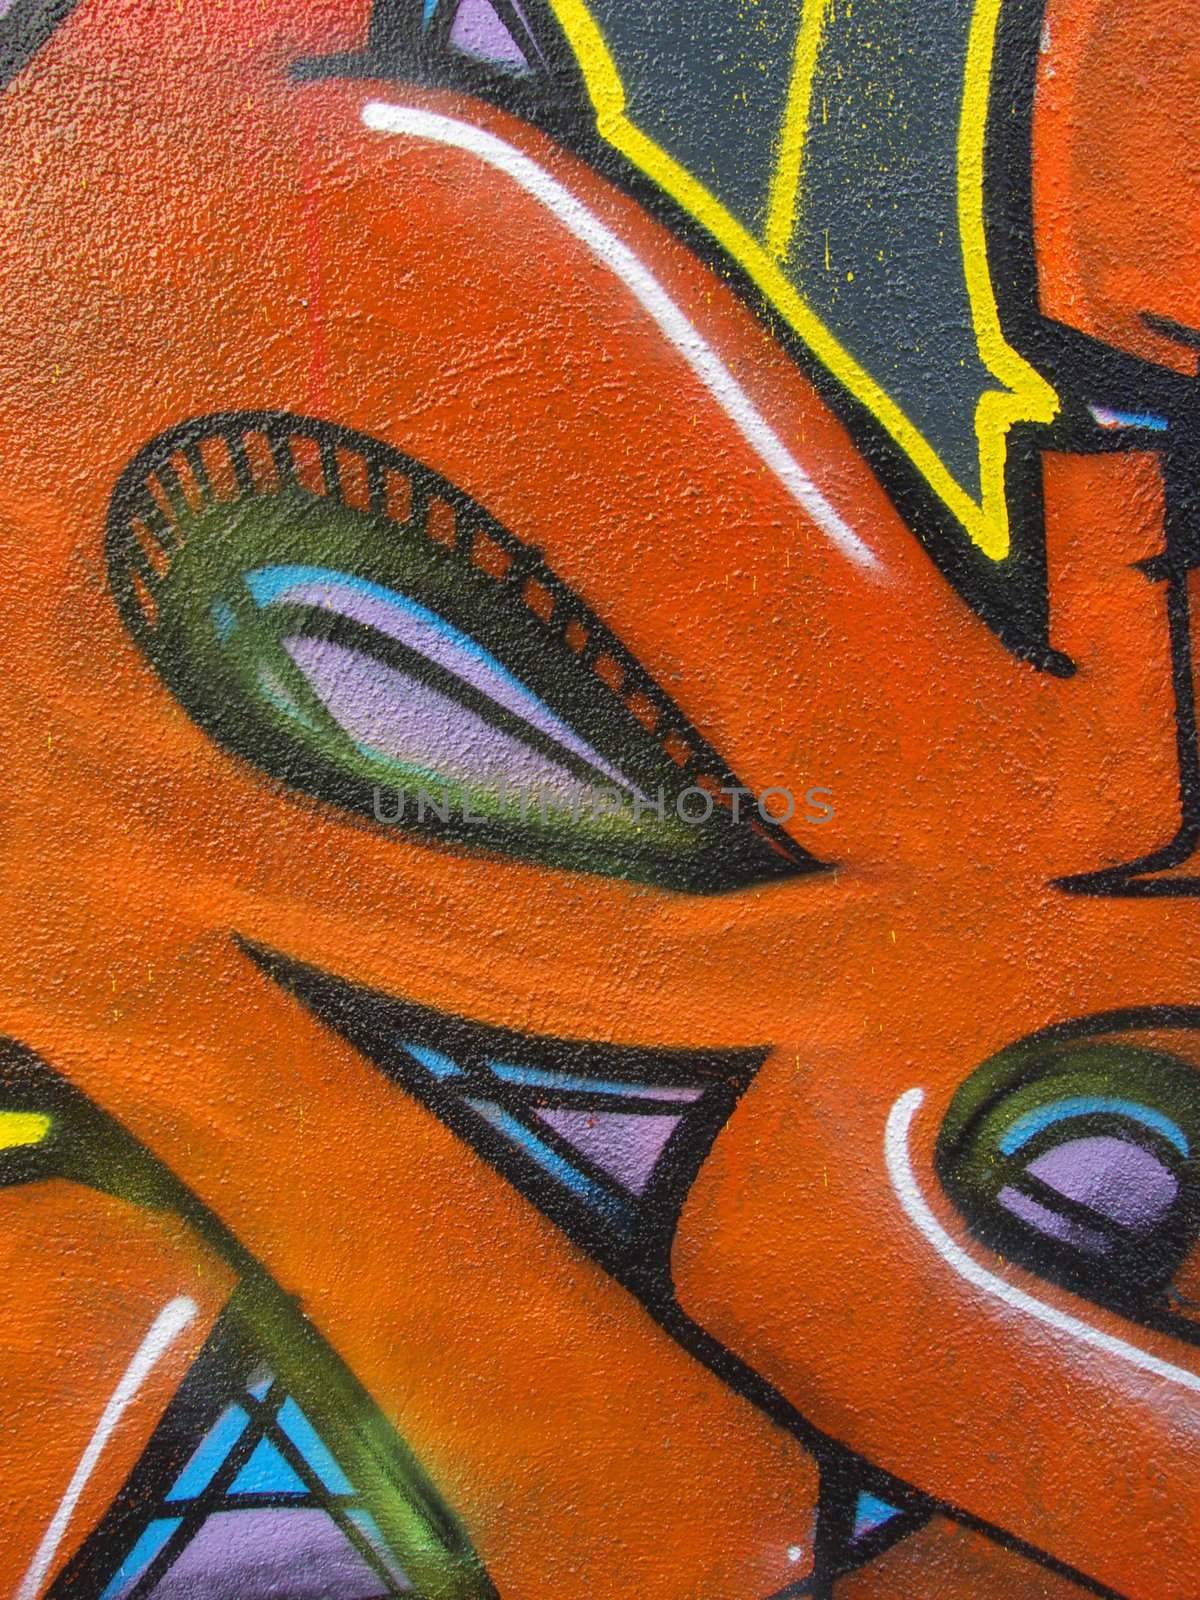 Graffiti Detail by jbouzou